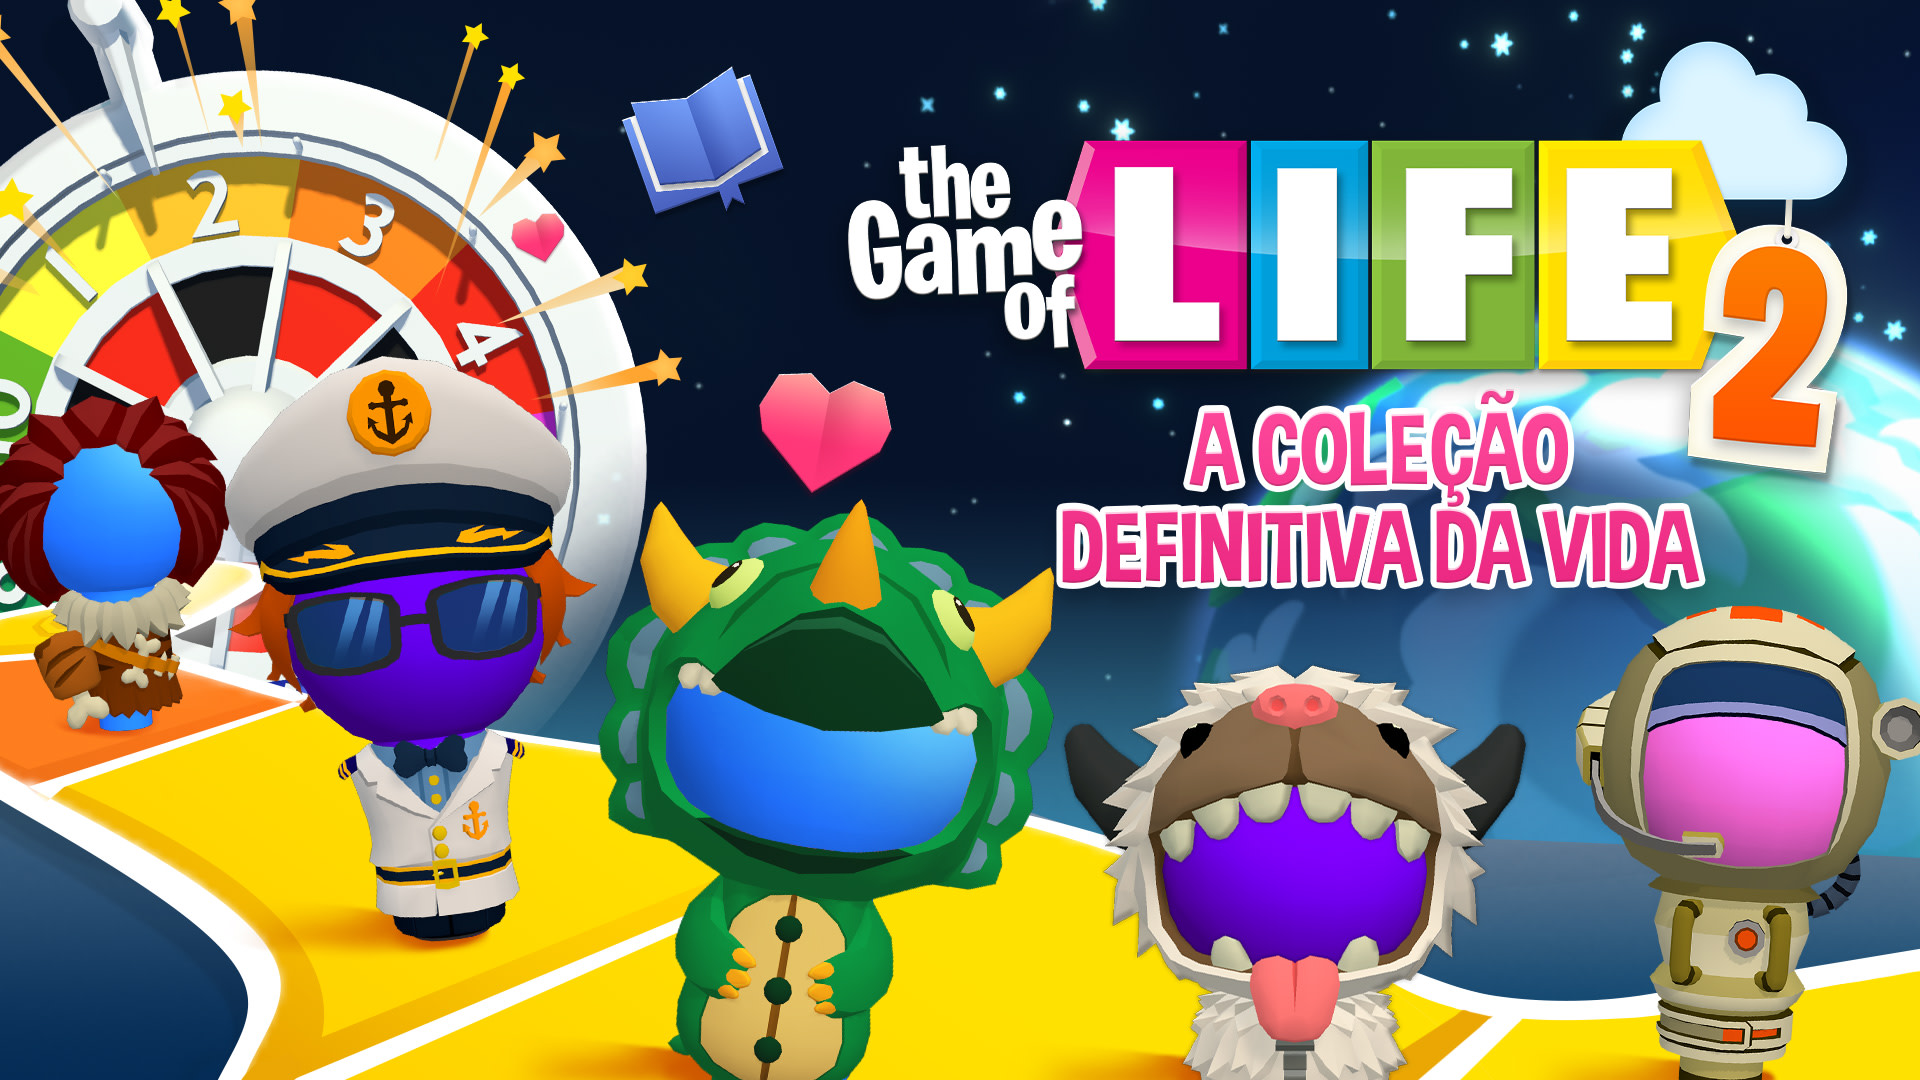 THE GAME OF LIFE 2 - Coleção Definitiva da Vida